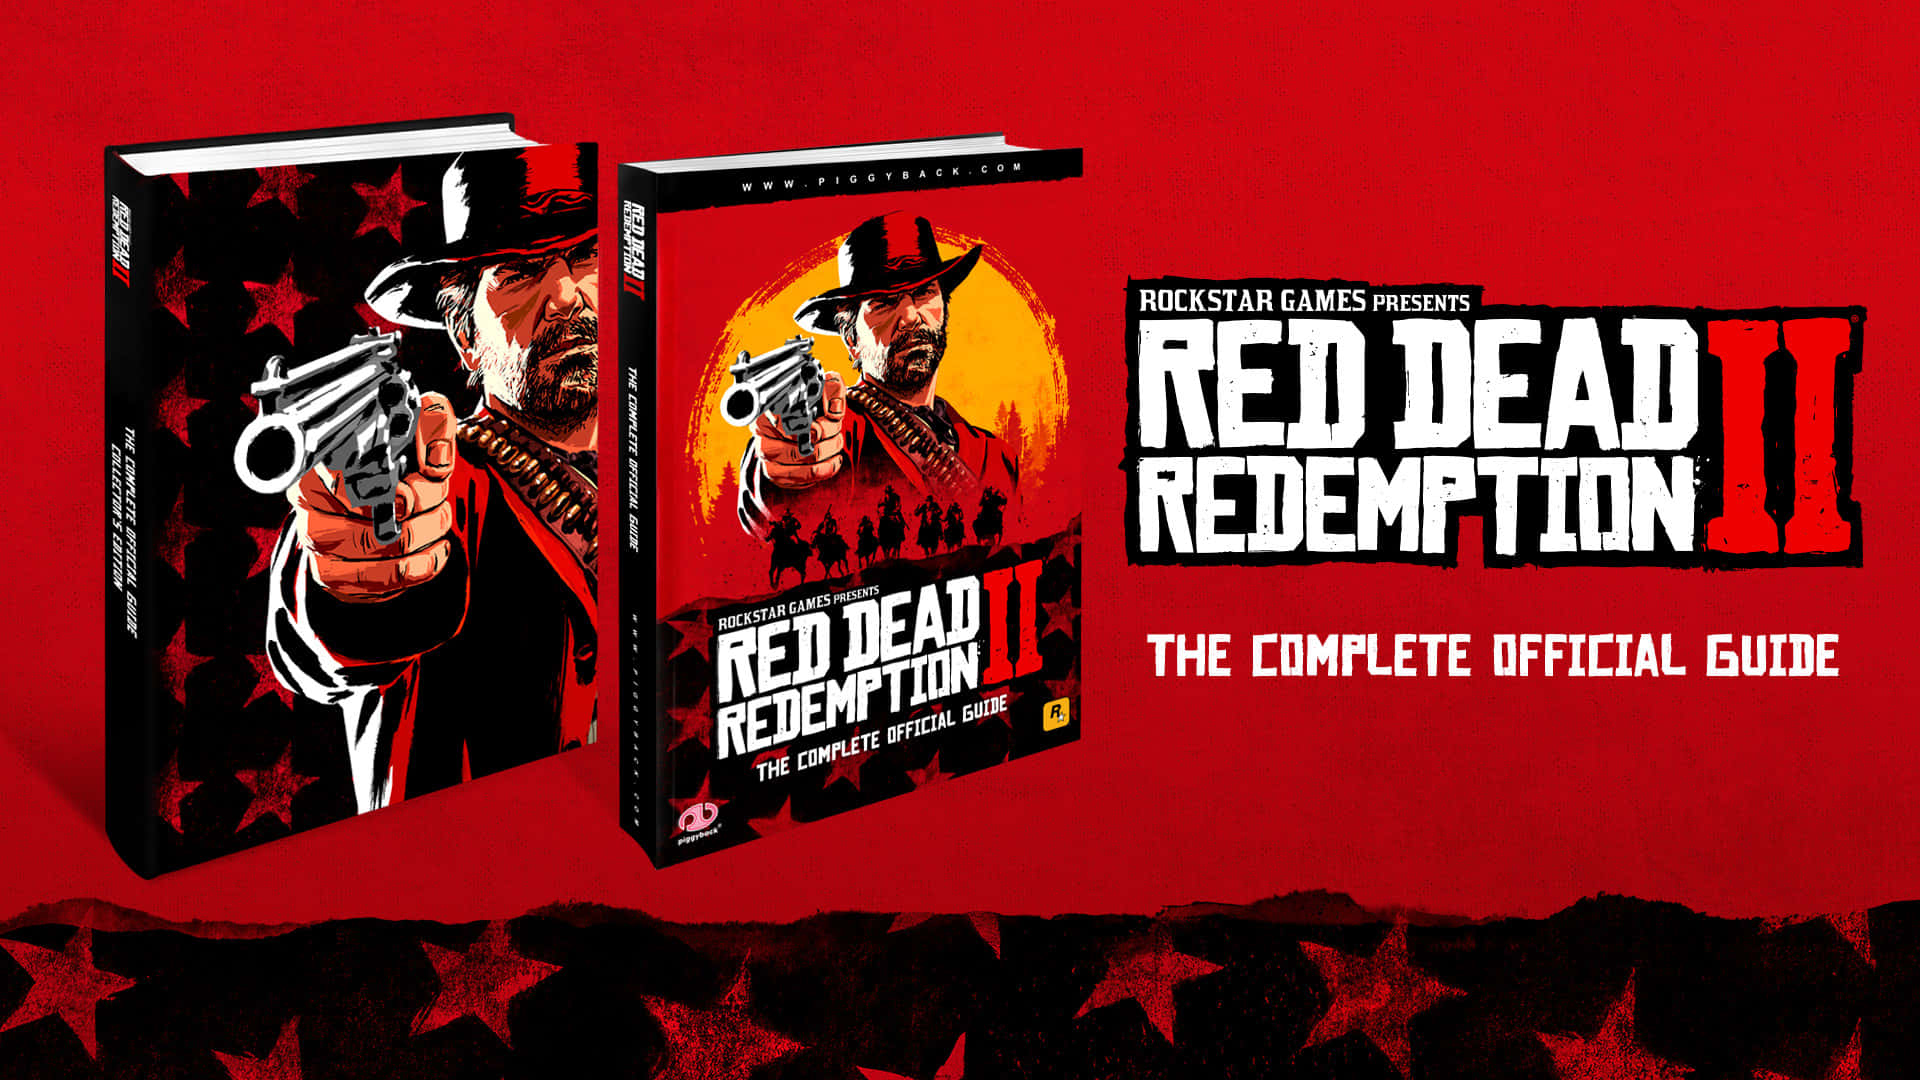 Plantillade Póster Manual 1920x1080 Fondo De Red Dead Redemption 2 En Tono Rojo.